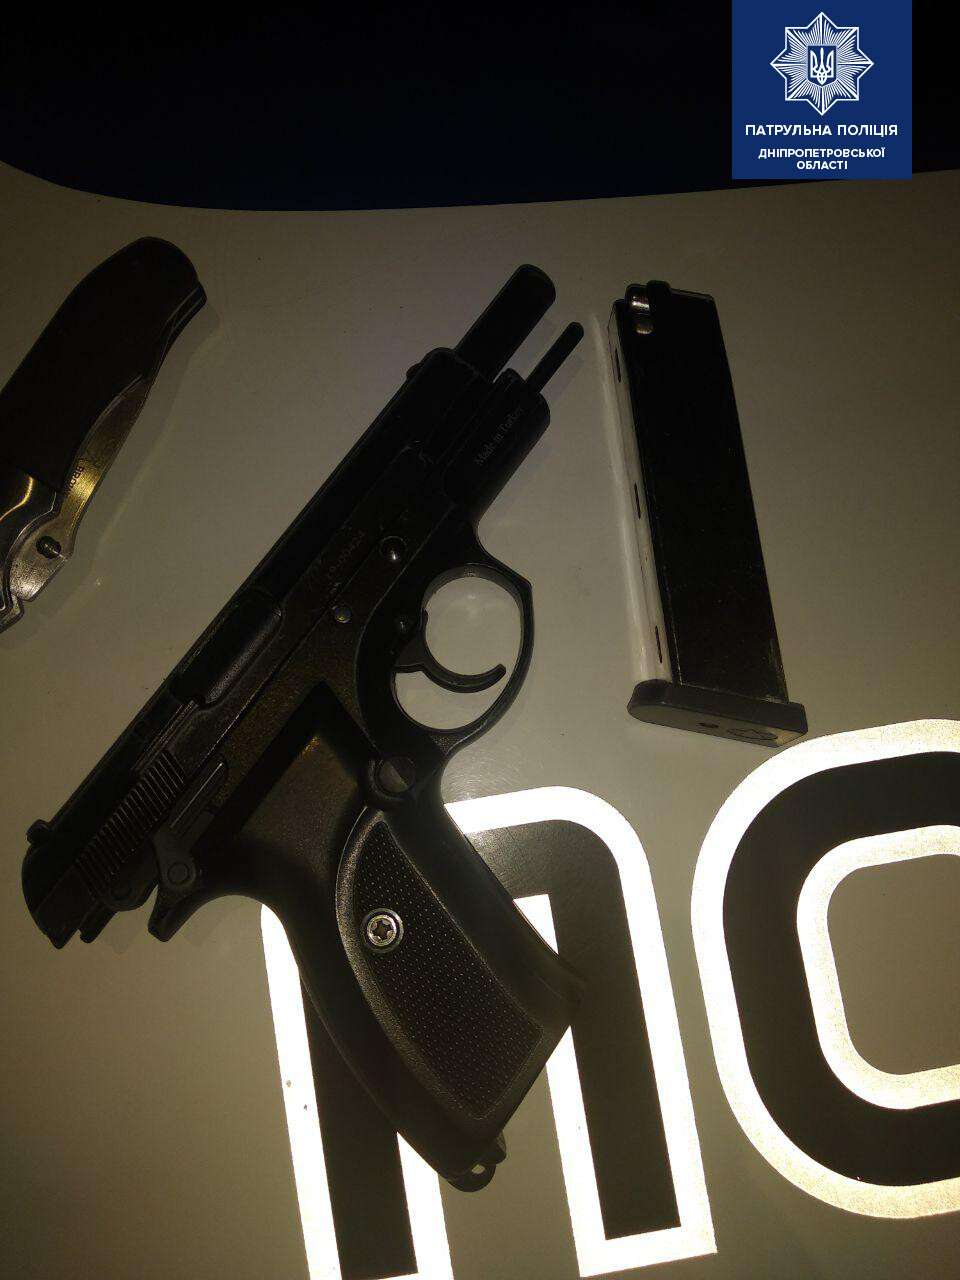 В Днепре у 20-летнего парня нашли дома пистолет и наркотики.jpg